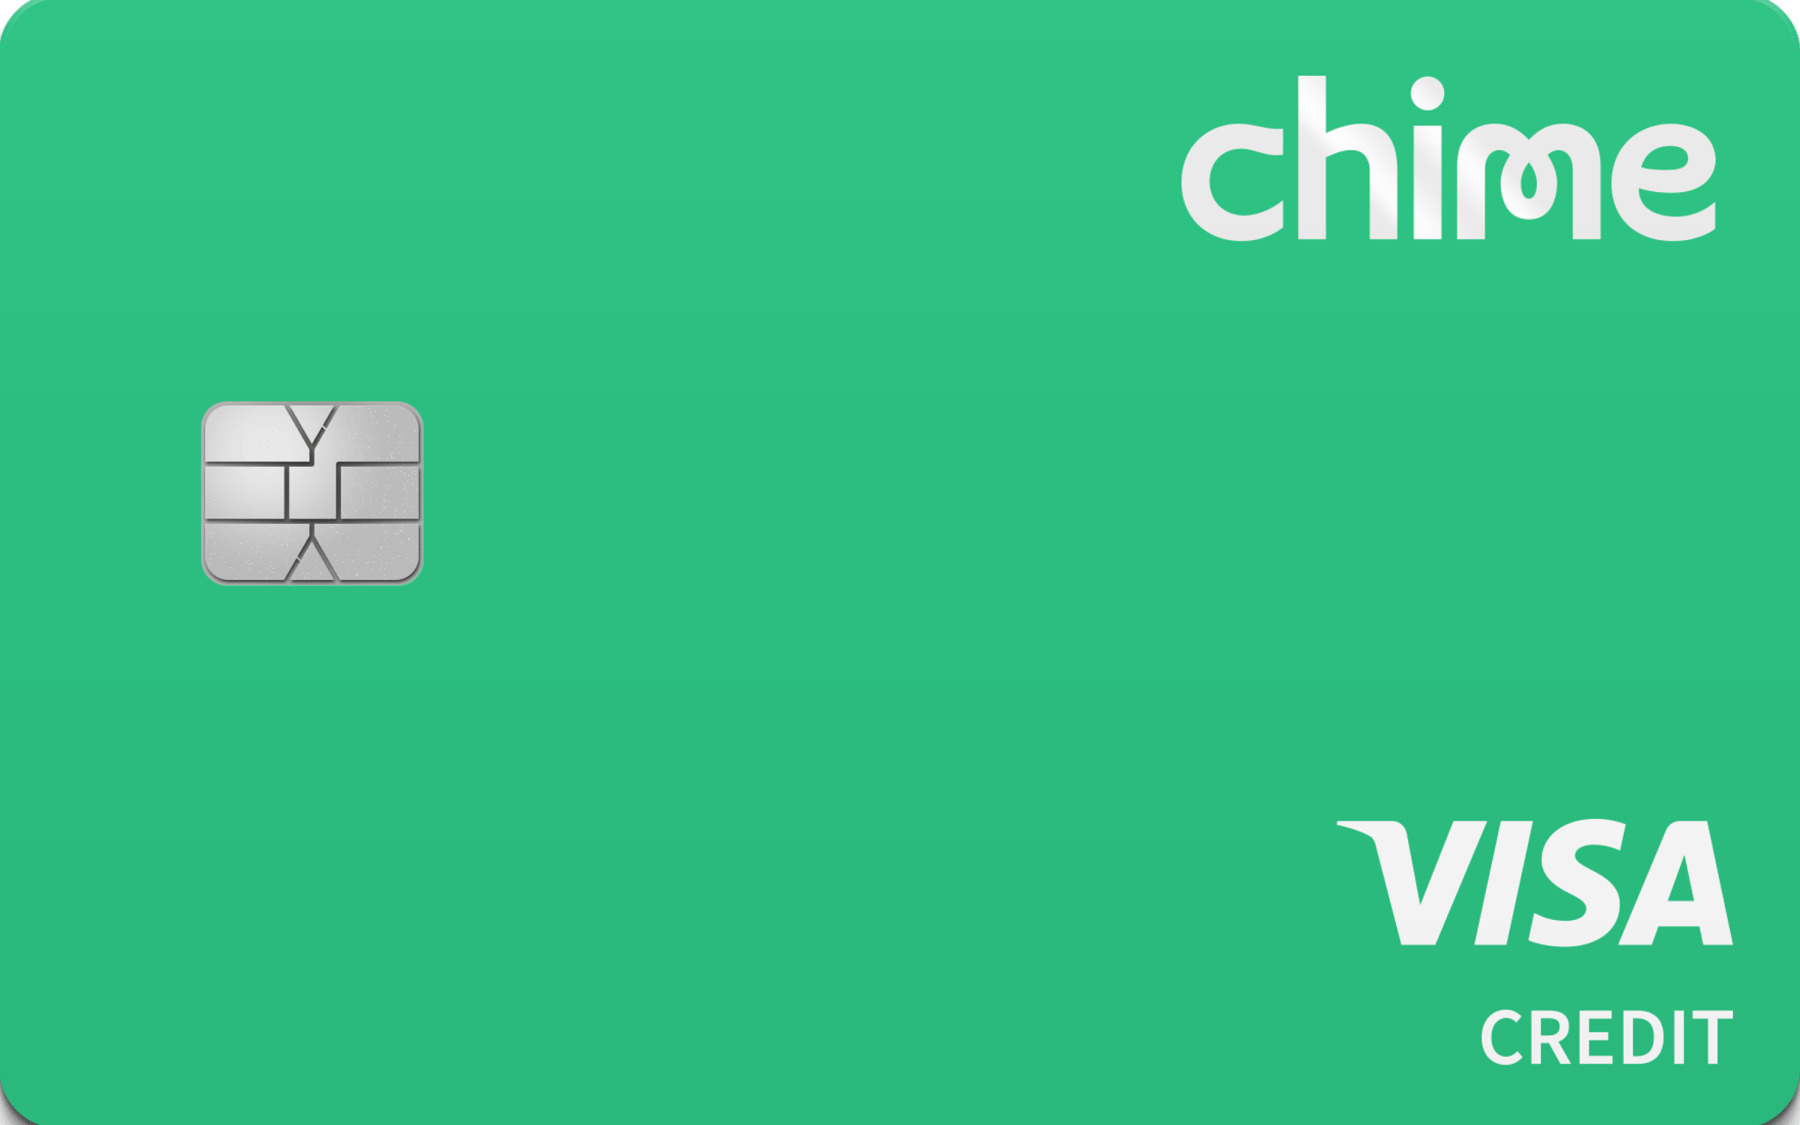 Chime Credit Builder Visa® Credit Card card image